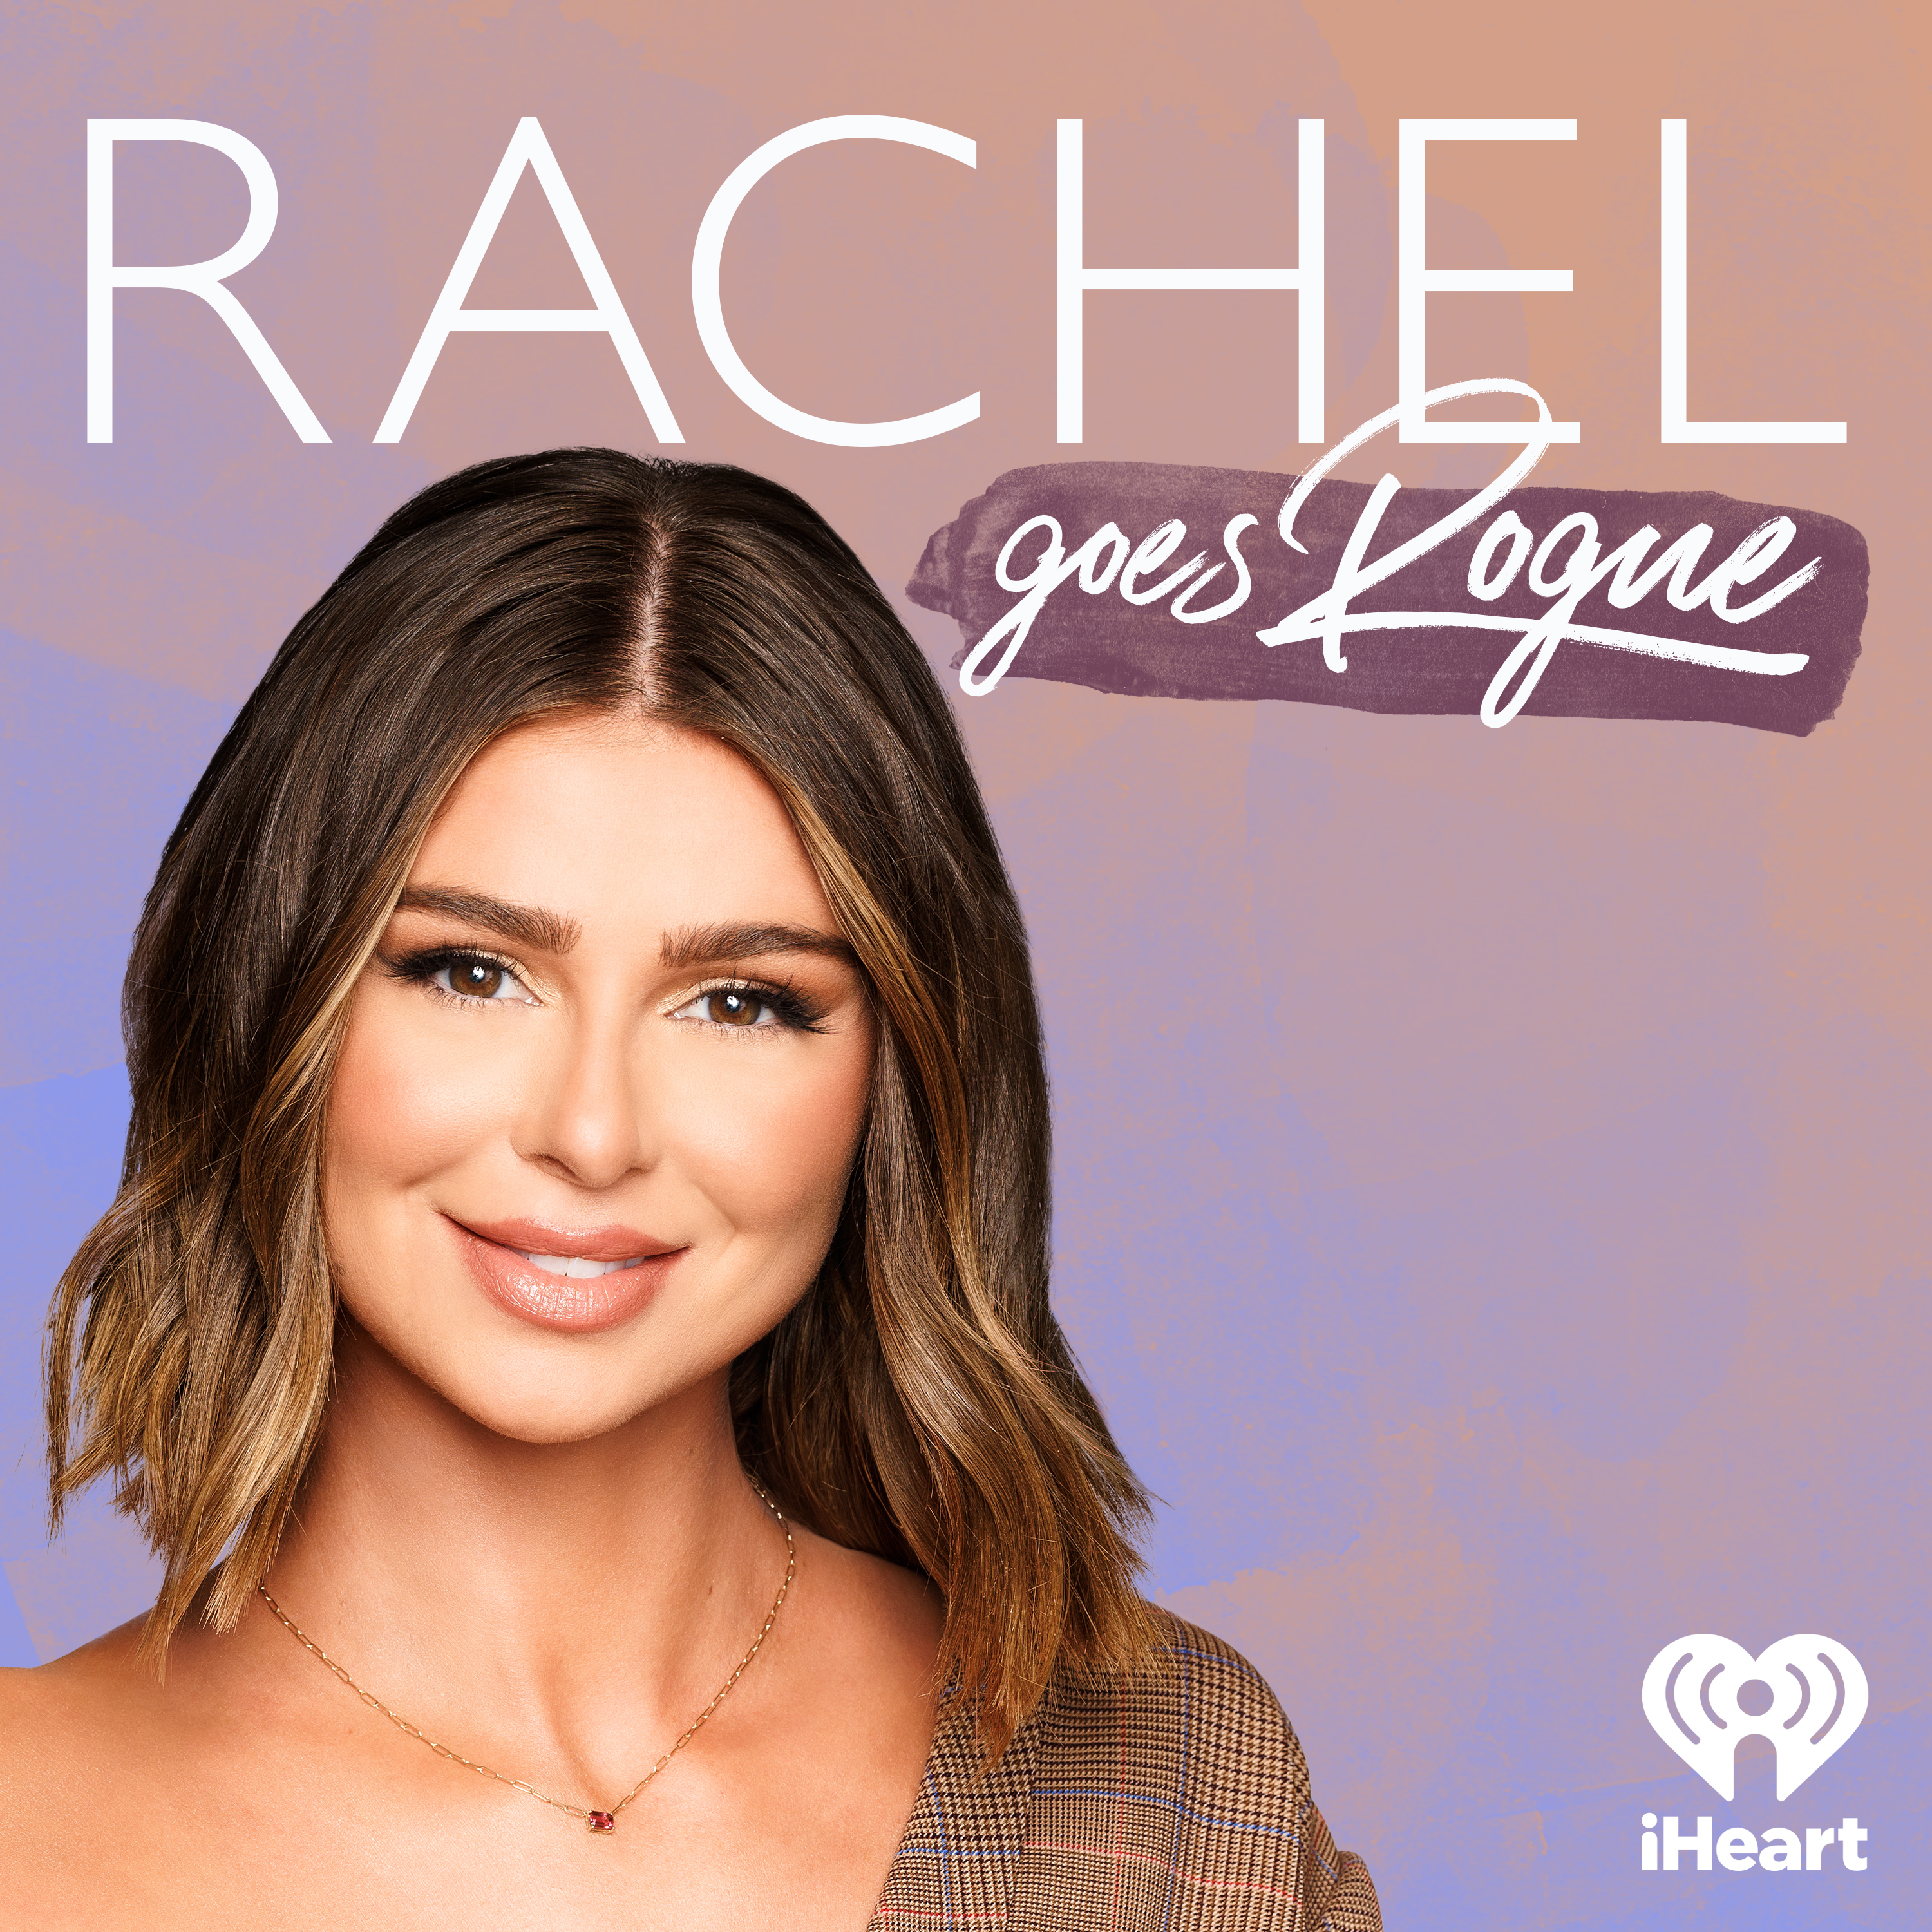 Rachel's "Going" Rogue